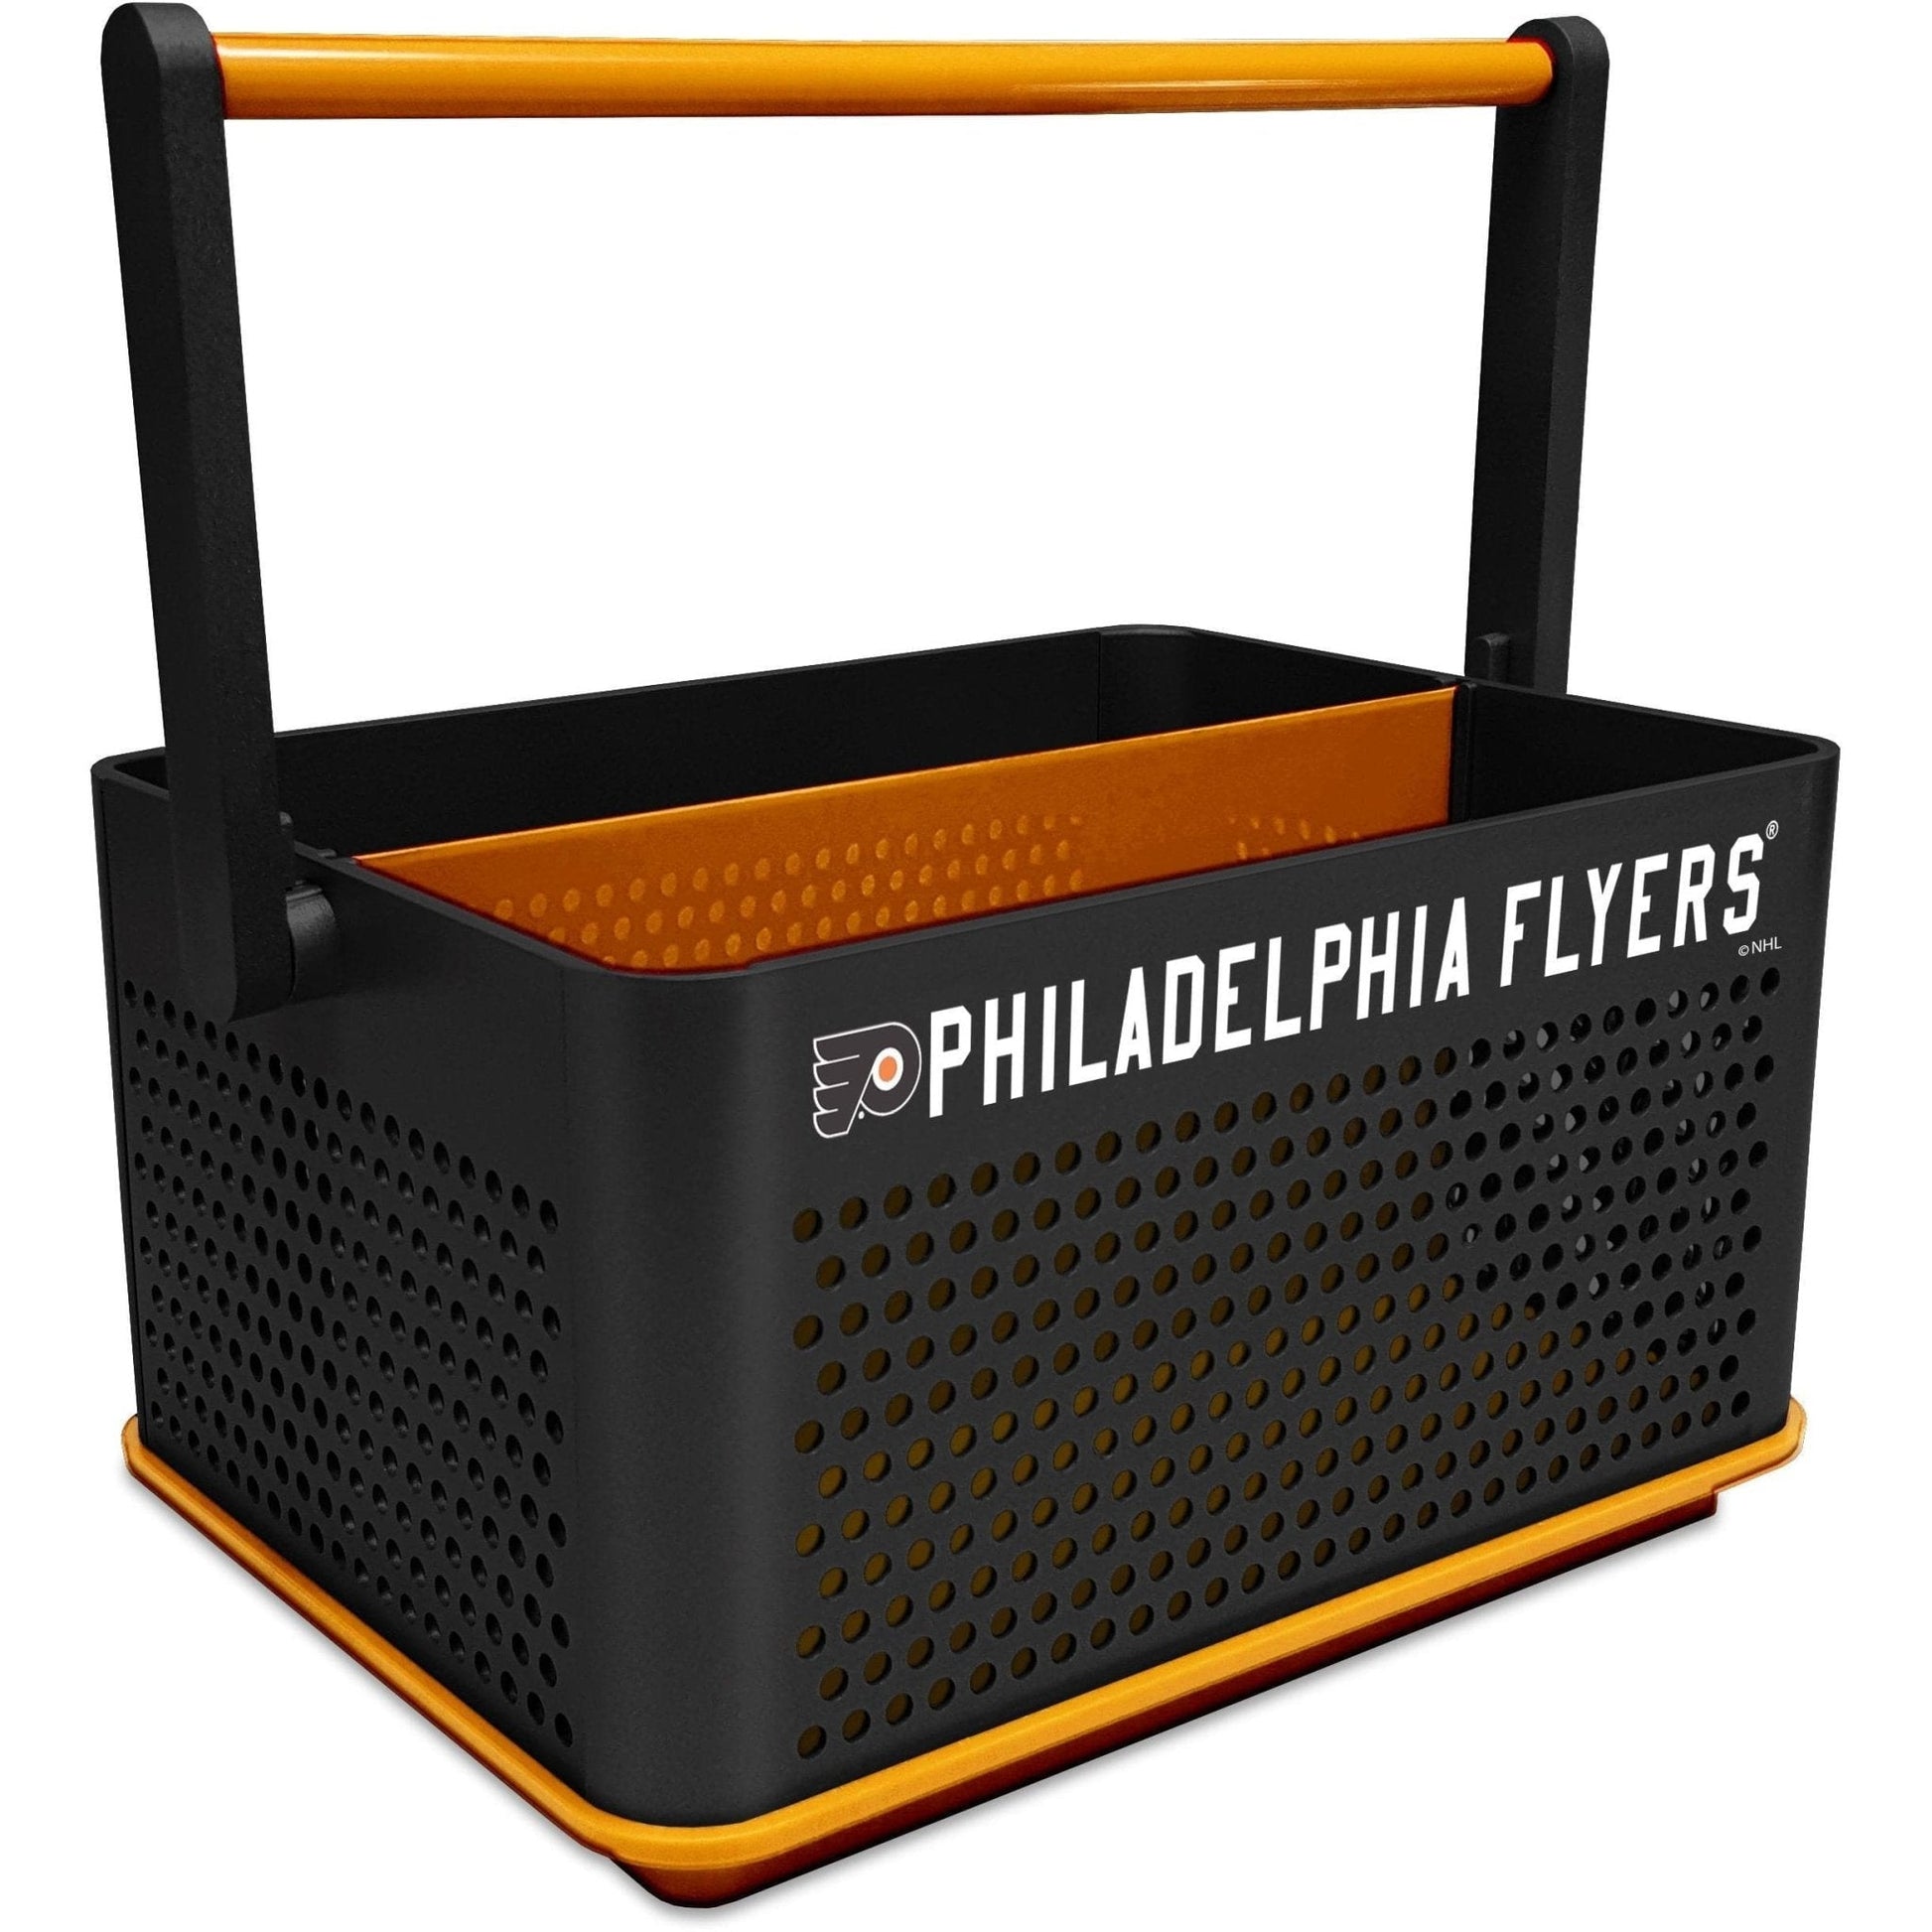 Philadelphia Flyers: Tailgate Caddy - The Fan-Brand